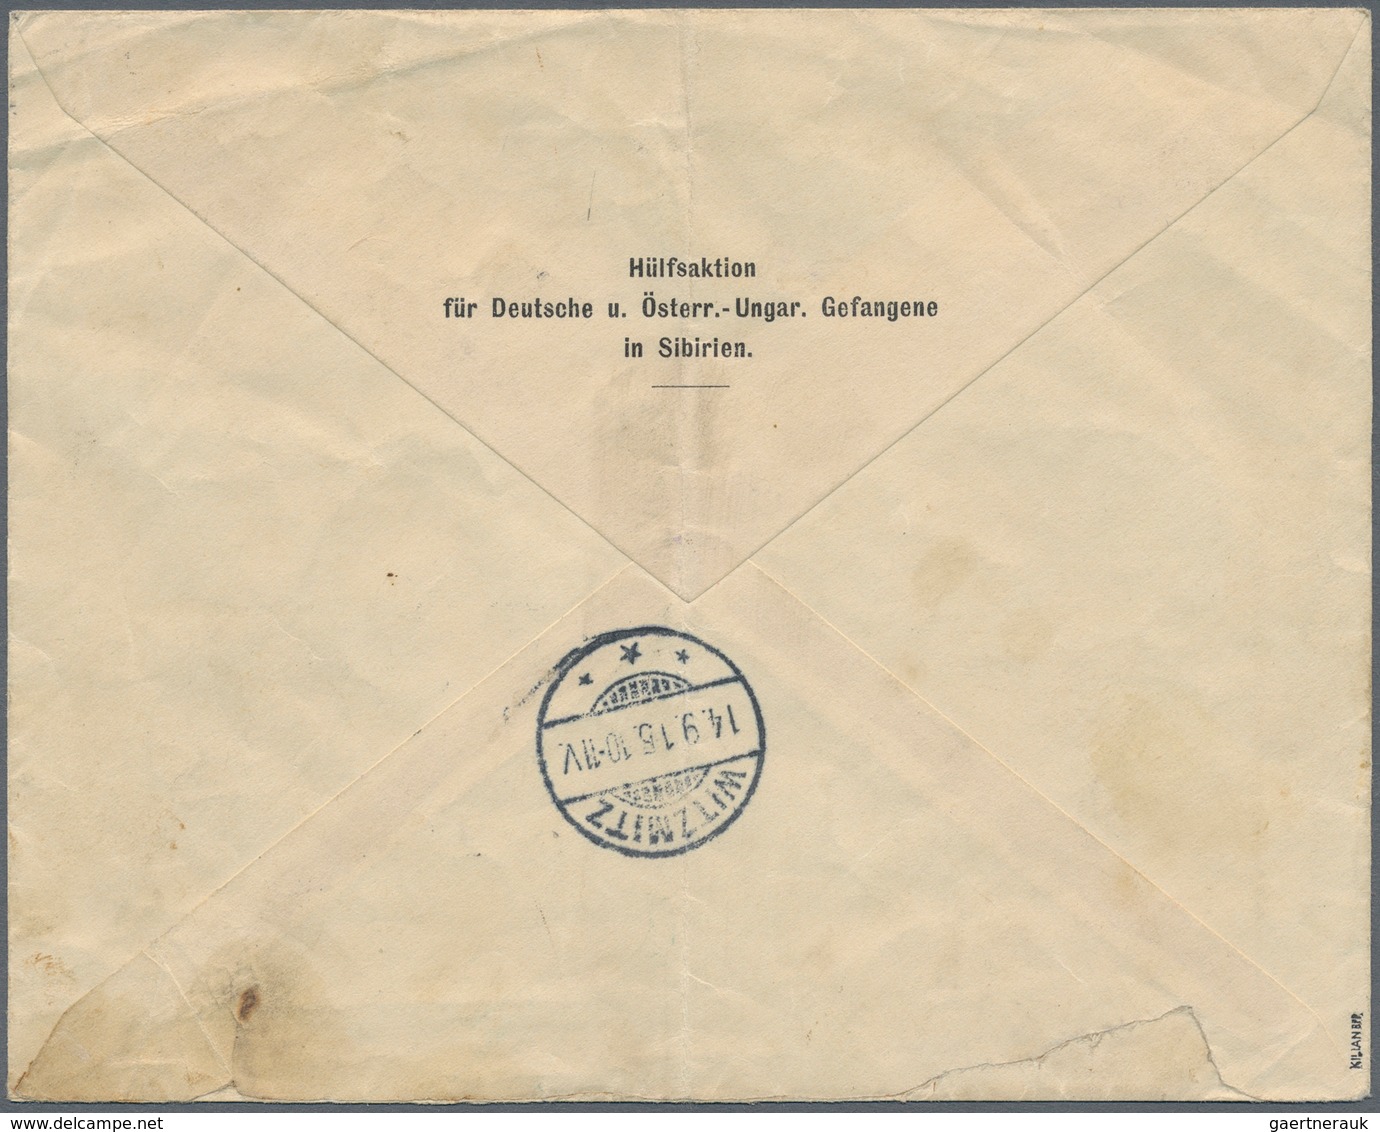 Deutsche Post In China: 1915, Vordruckumschlag "Service Des Prisonniers De Guerre" Als Einschreiben - China (kantoren)